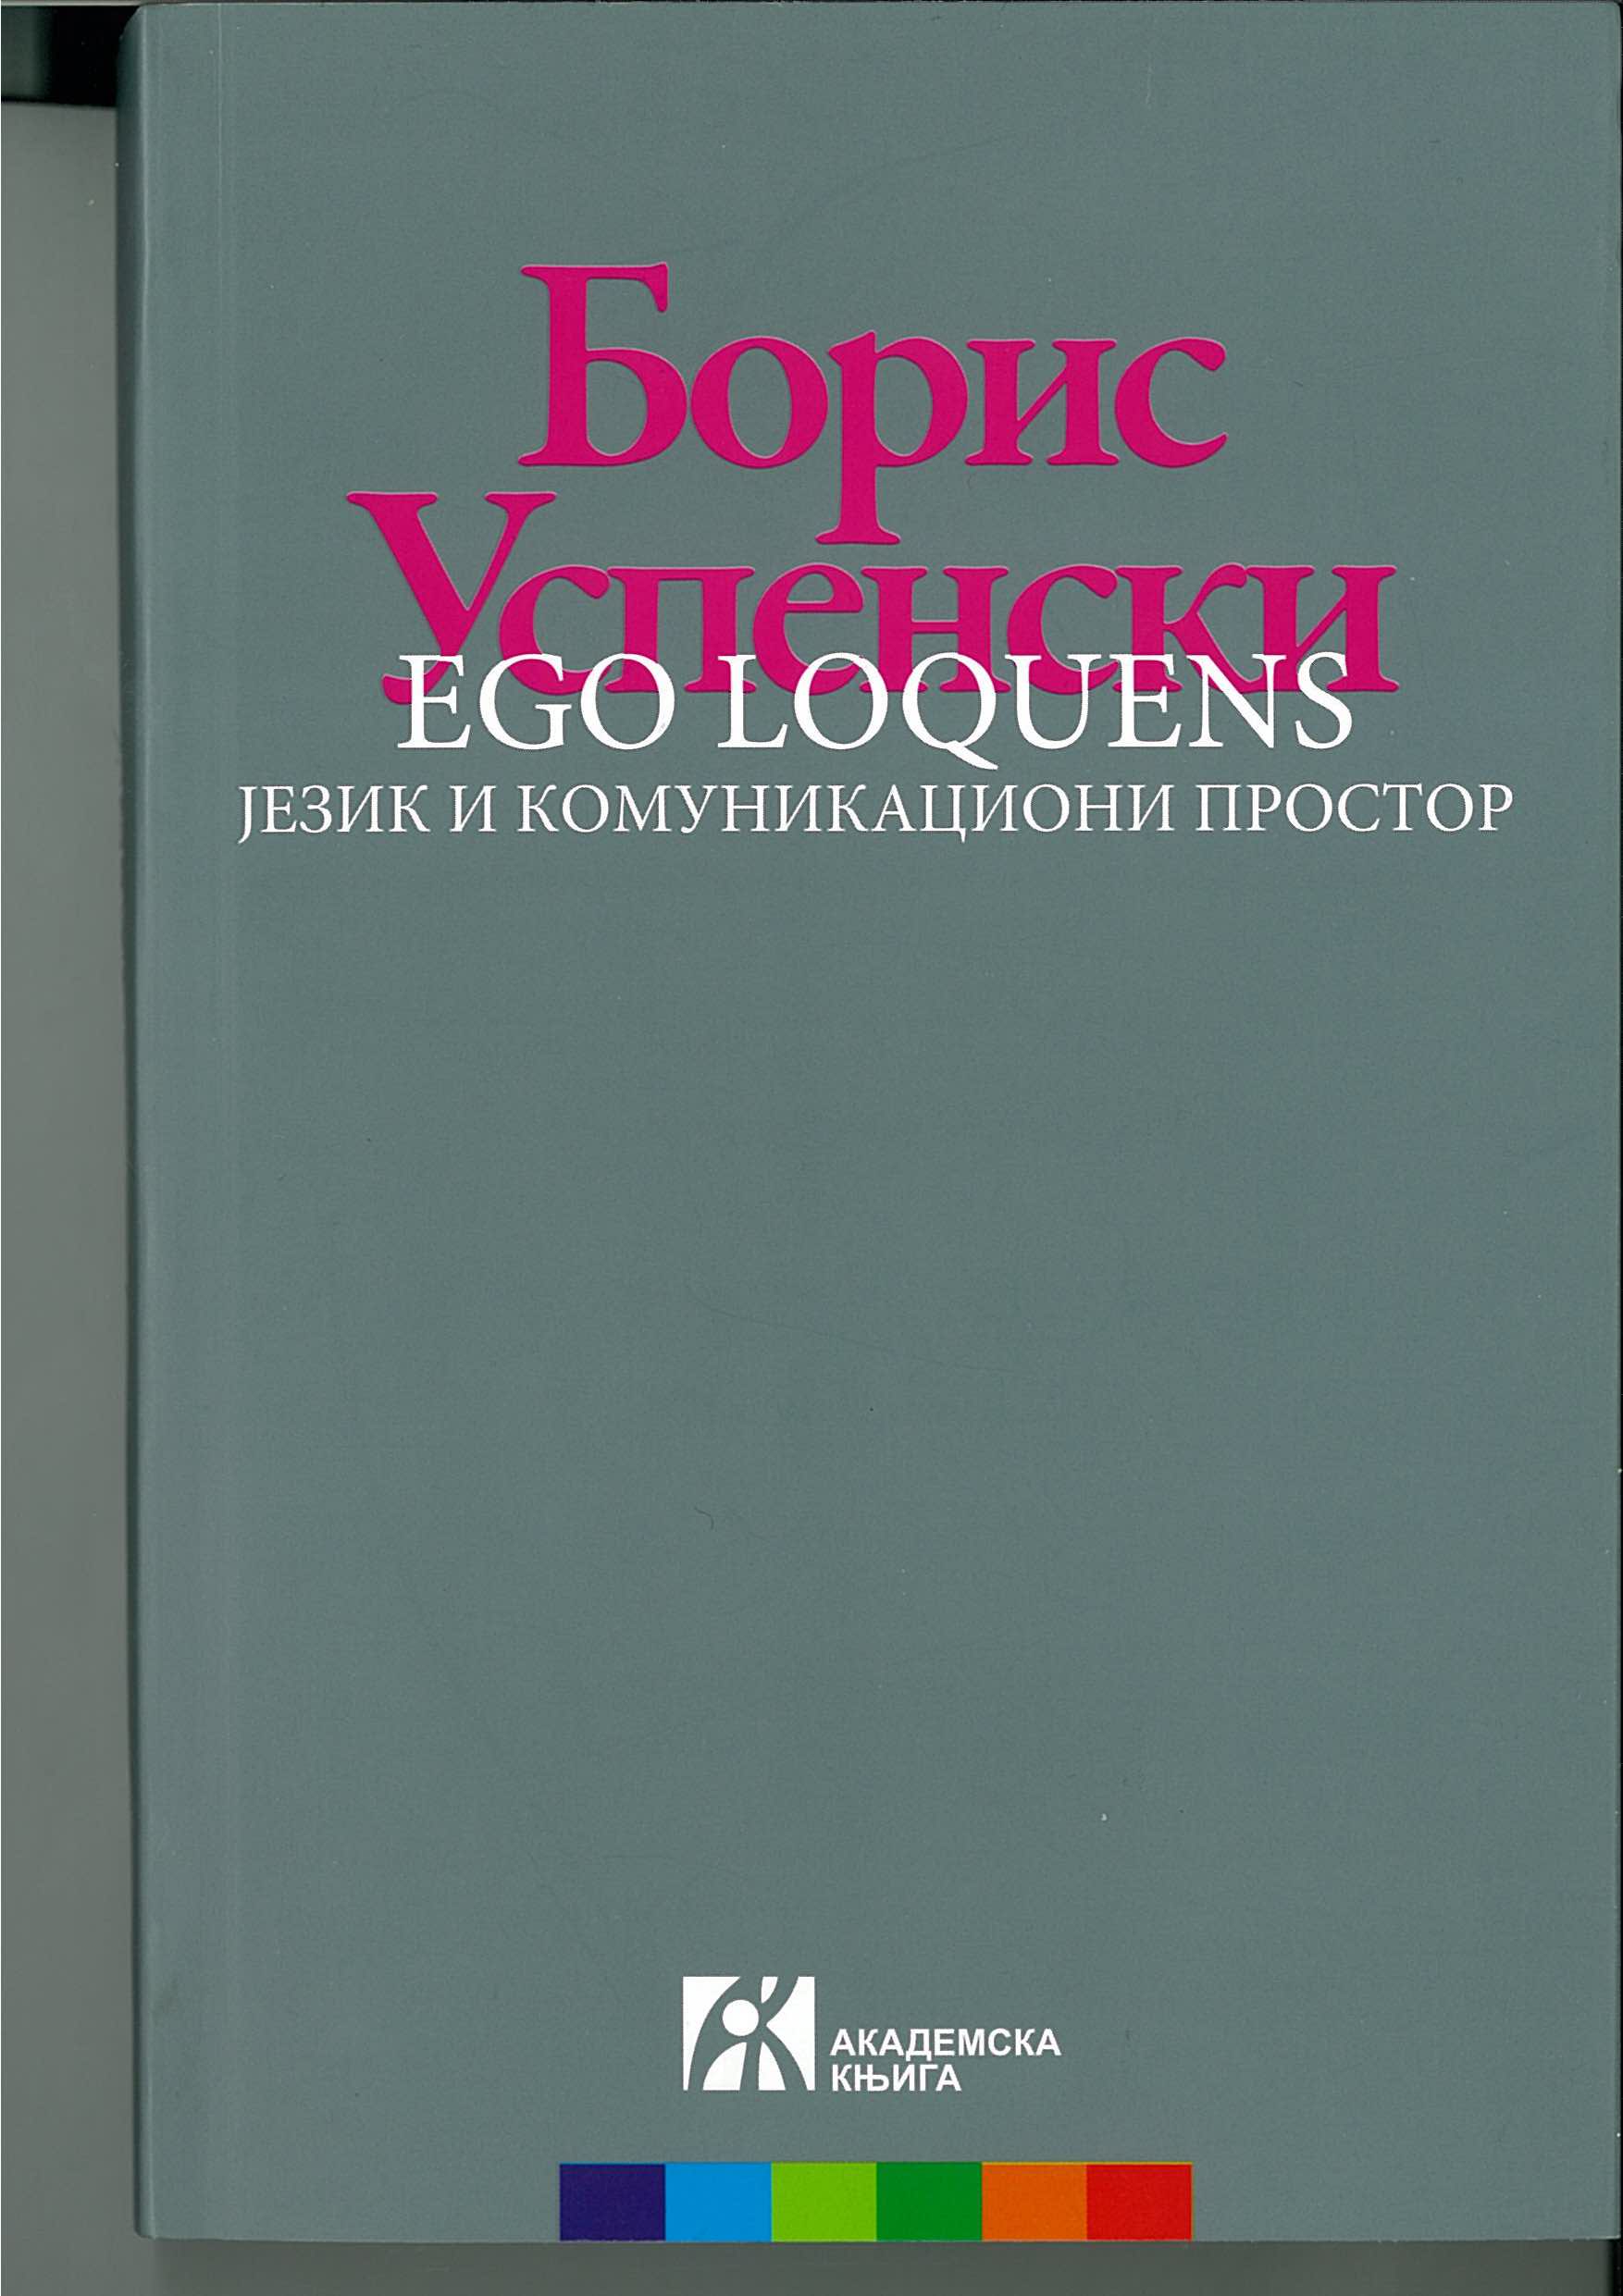 Ego loquens : језик и комуникациони простор